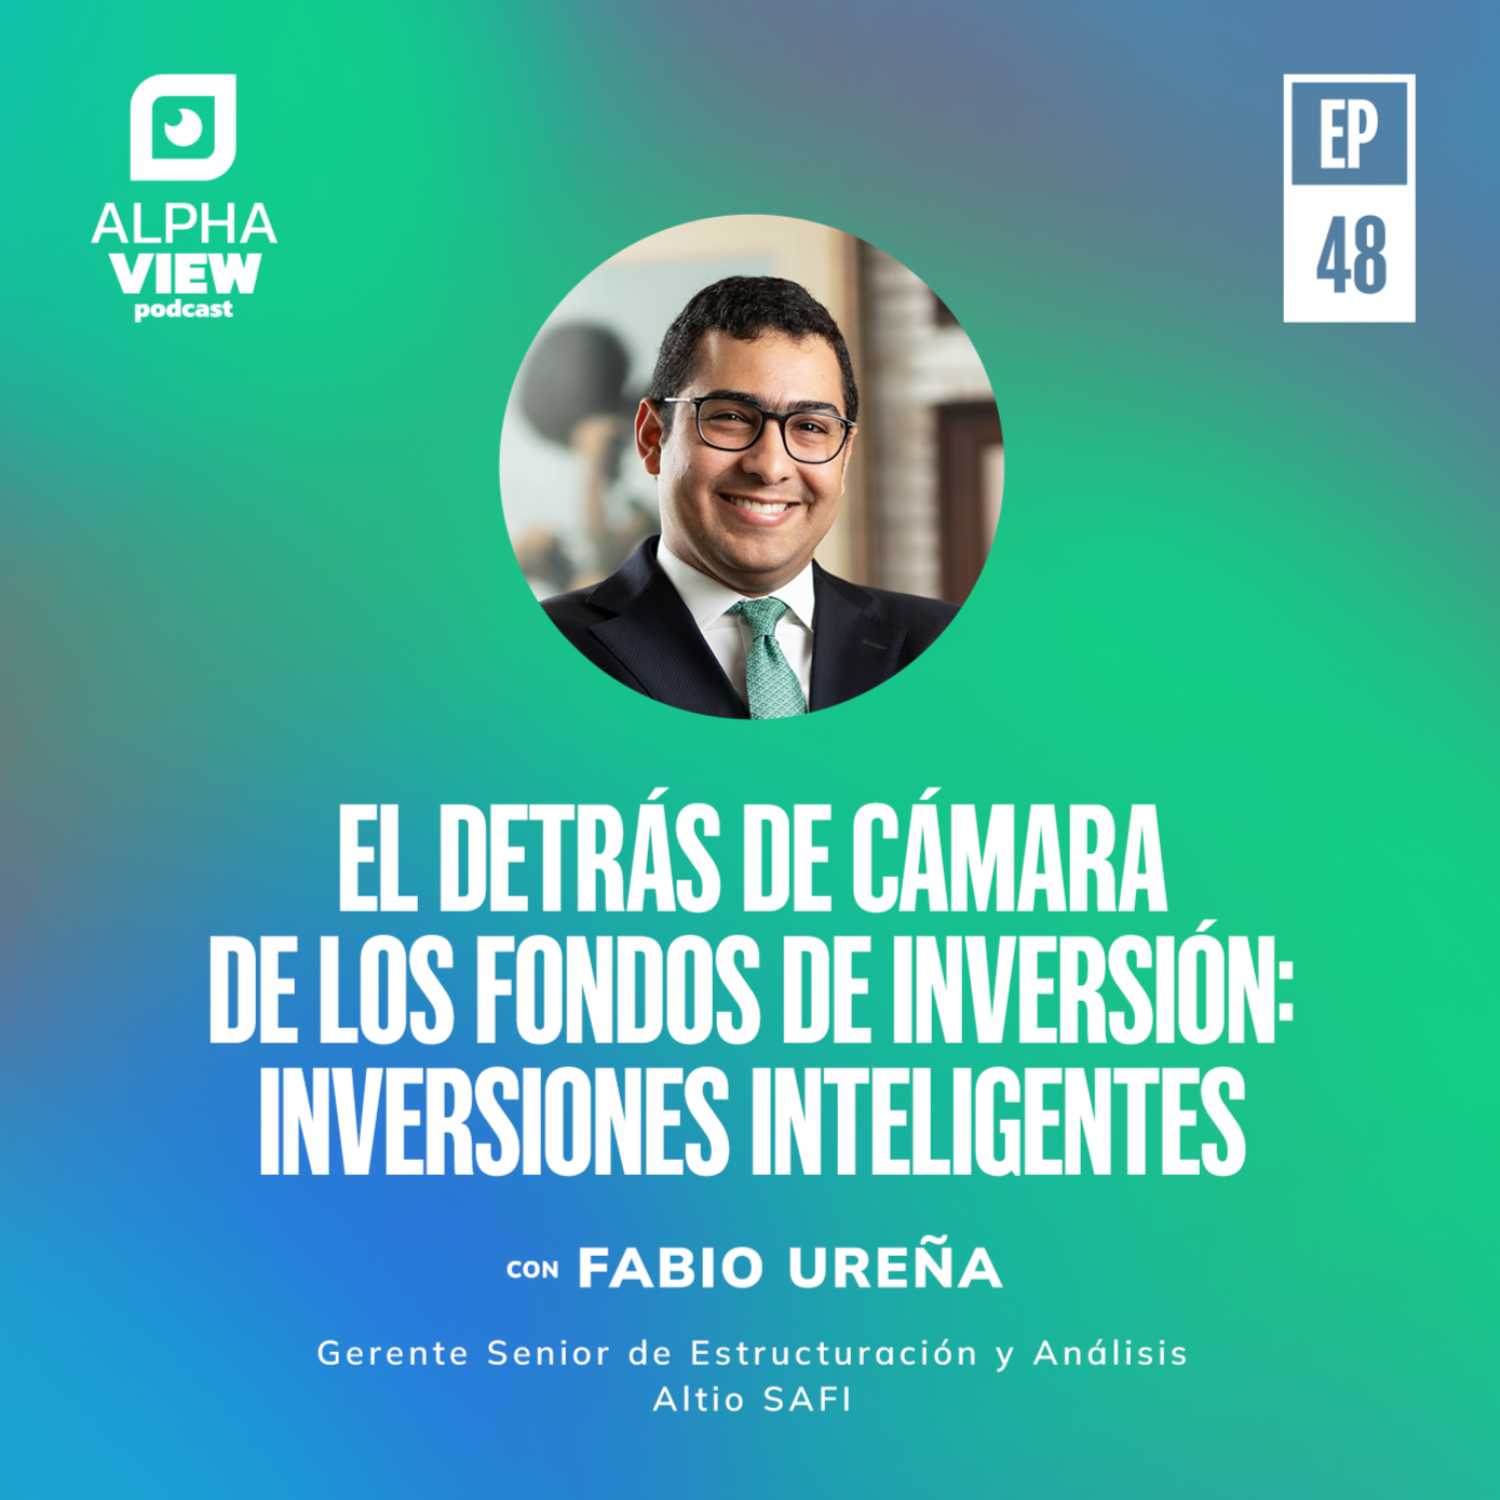 "El detrás de cámara de los fondos de inversión: Inversiones inteligentes" con Fabio Ureña